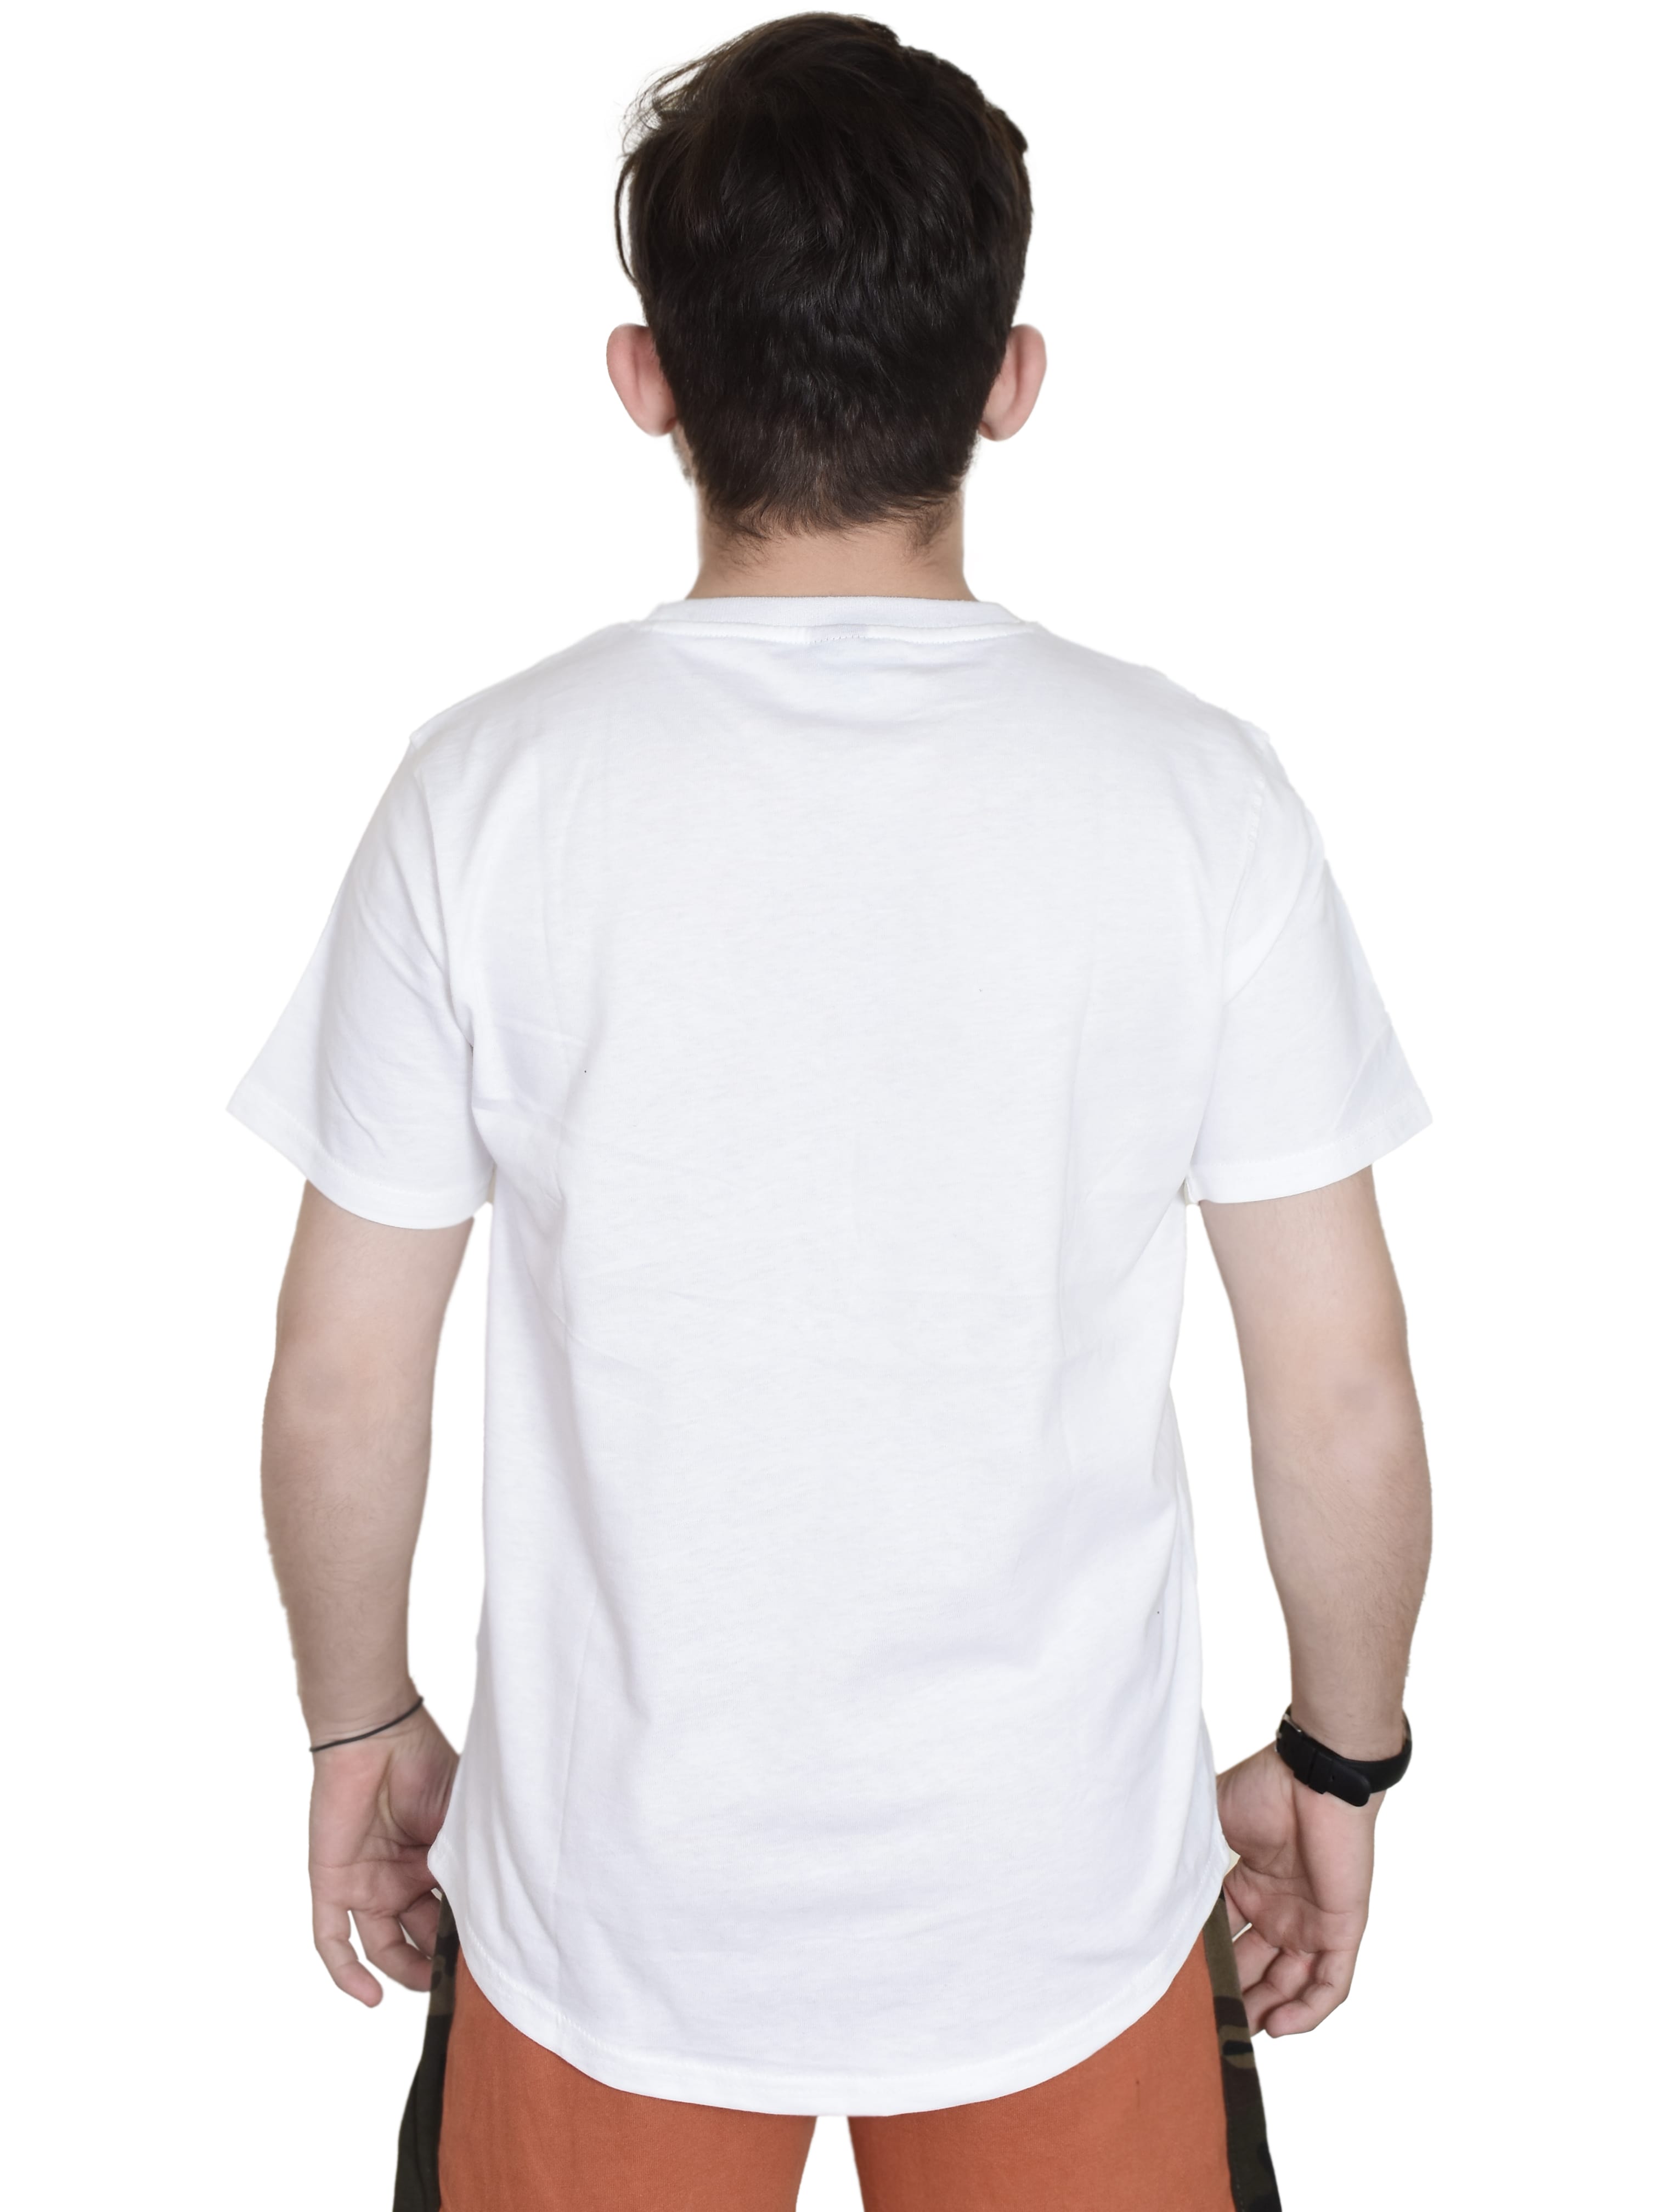 White t shirt